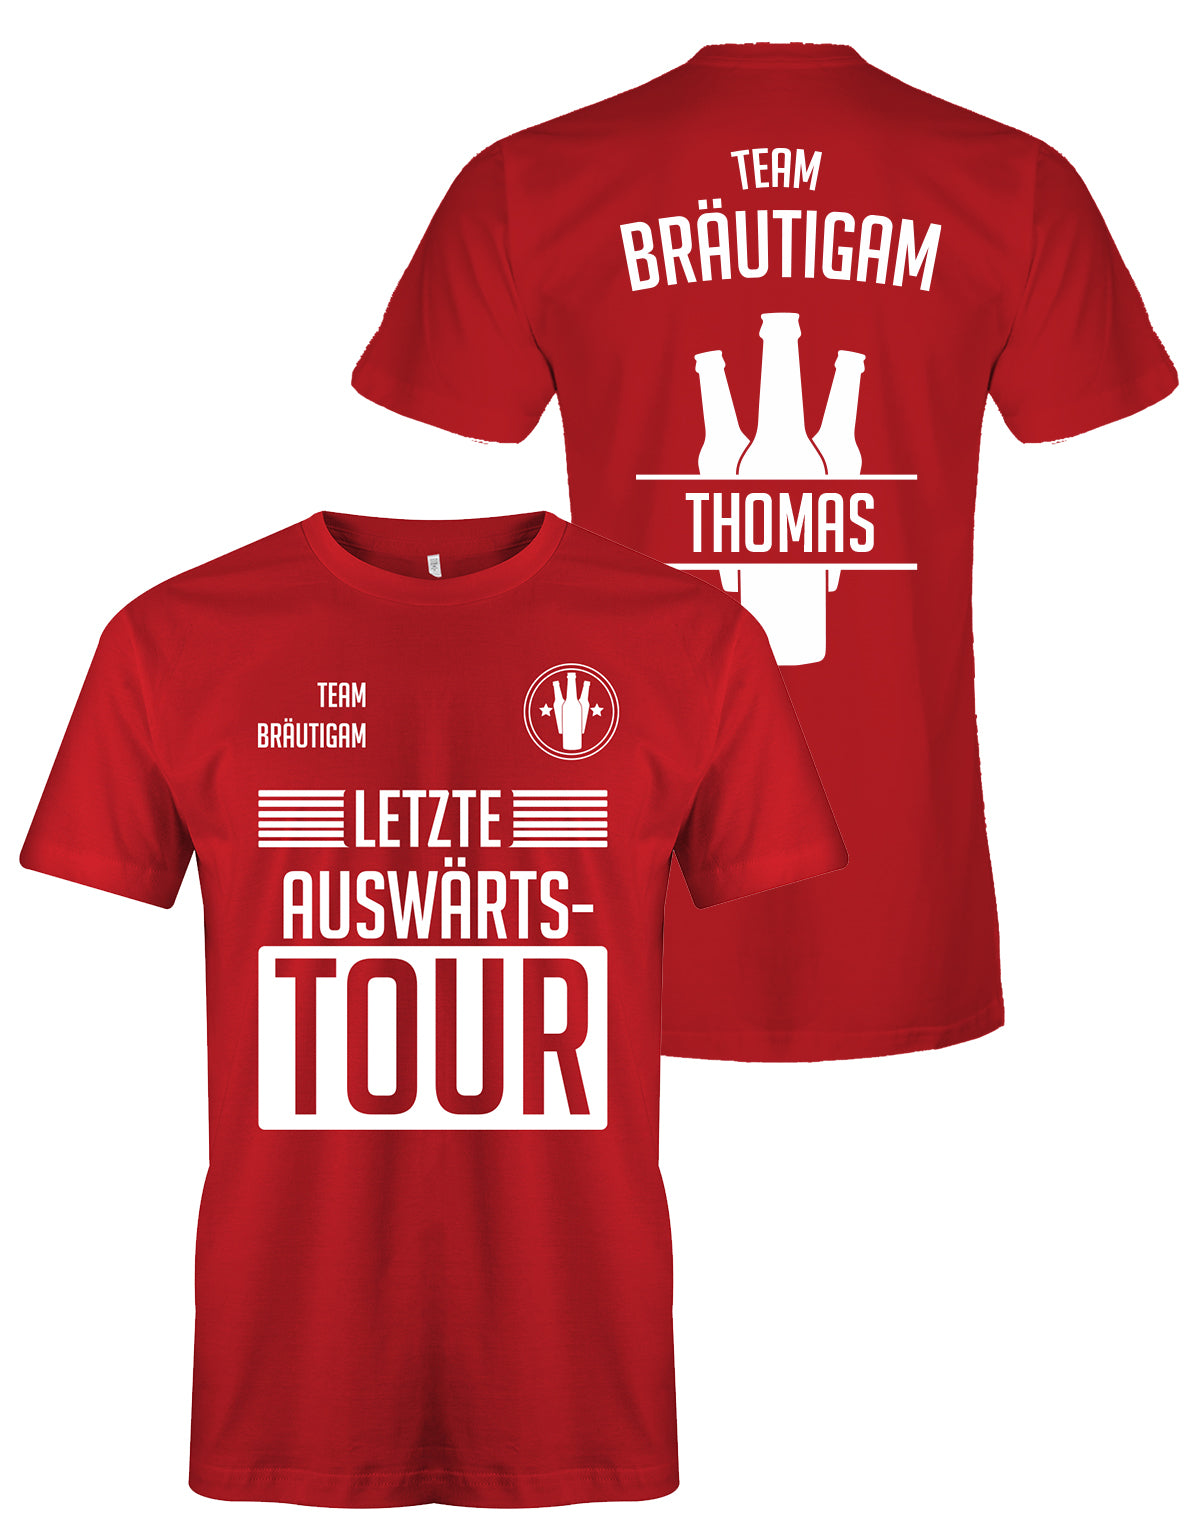 Letzte Auswärtstour JGA T Shirt - Bräutigam oder Team Bräutigam mit Namen Rot